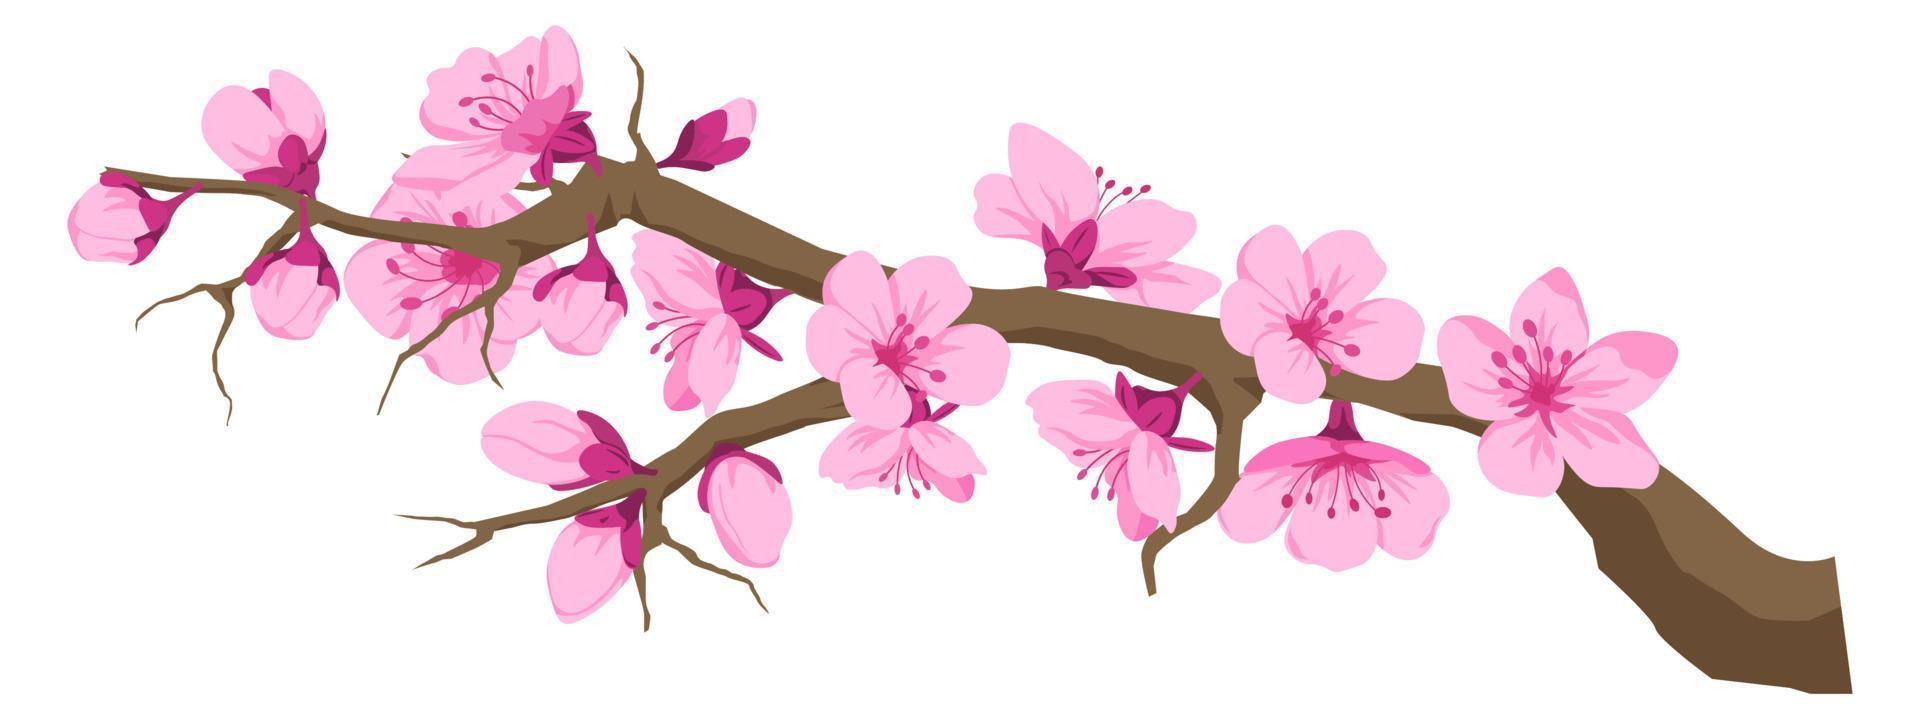 galho com flor de cerejeira, flores de sakura no galho vetor